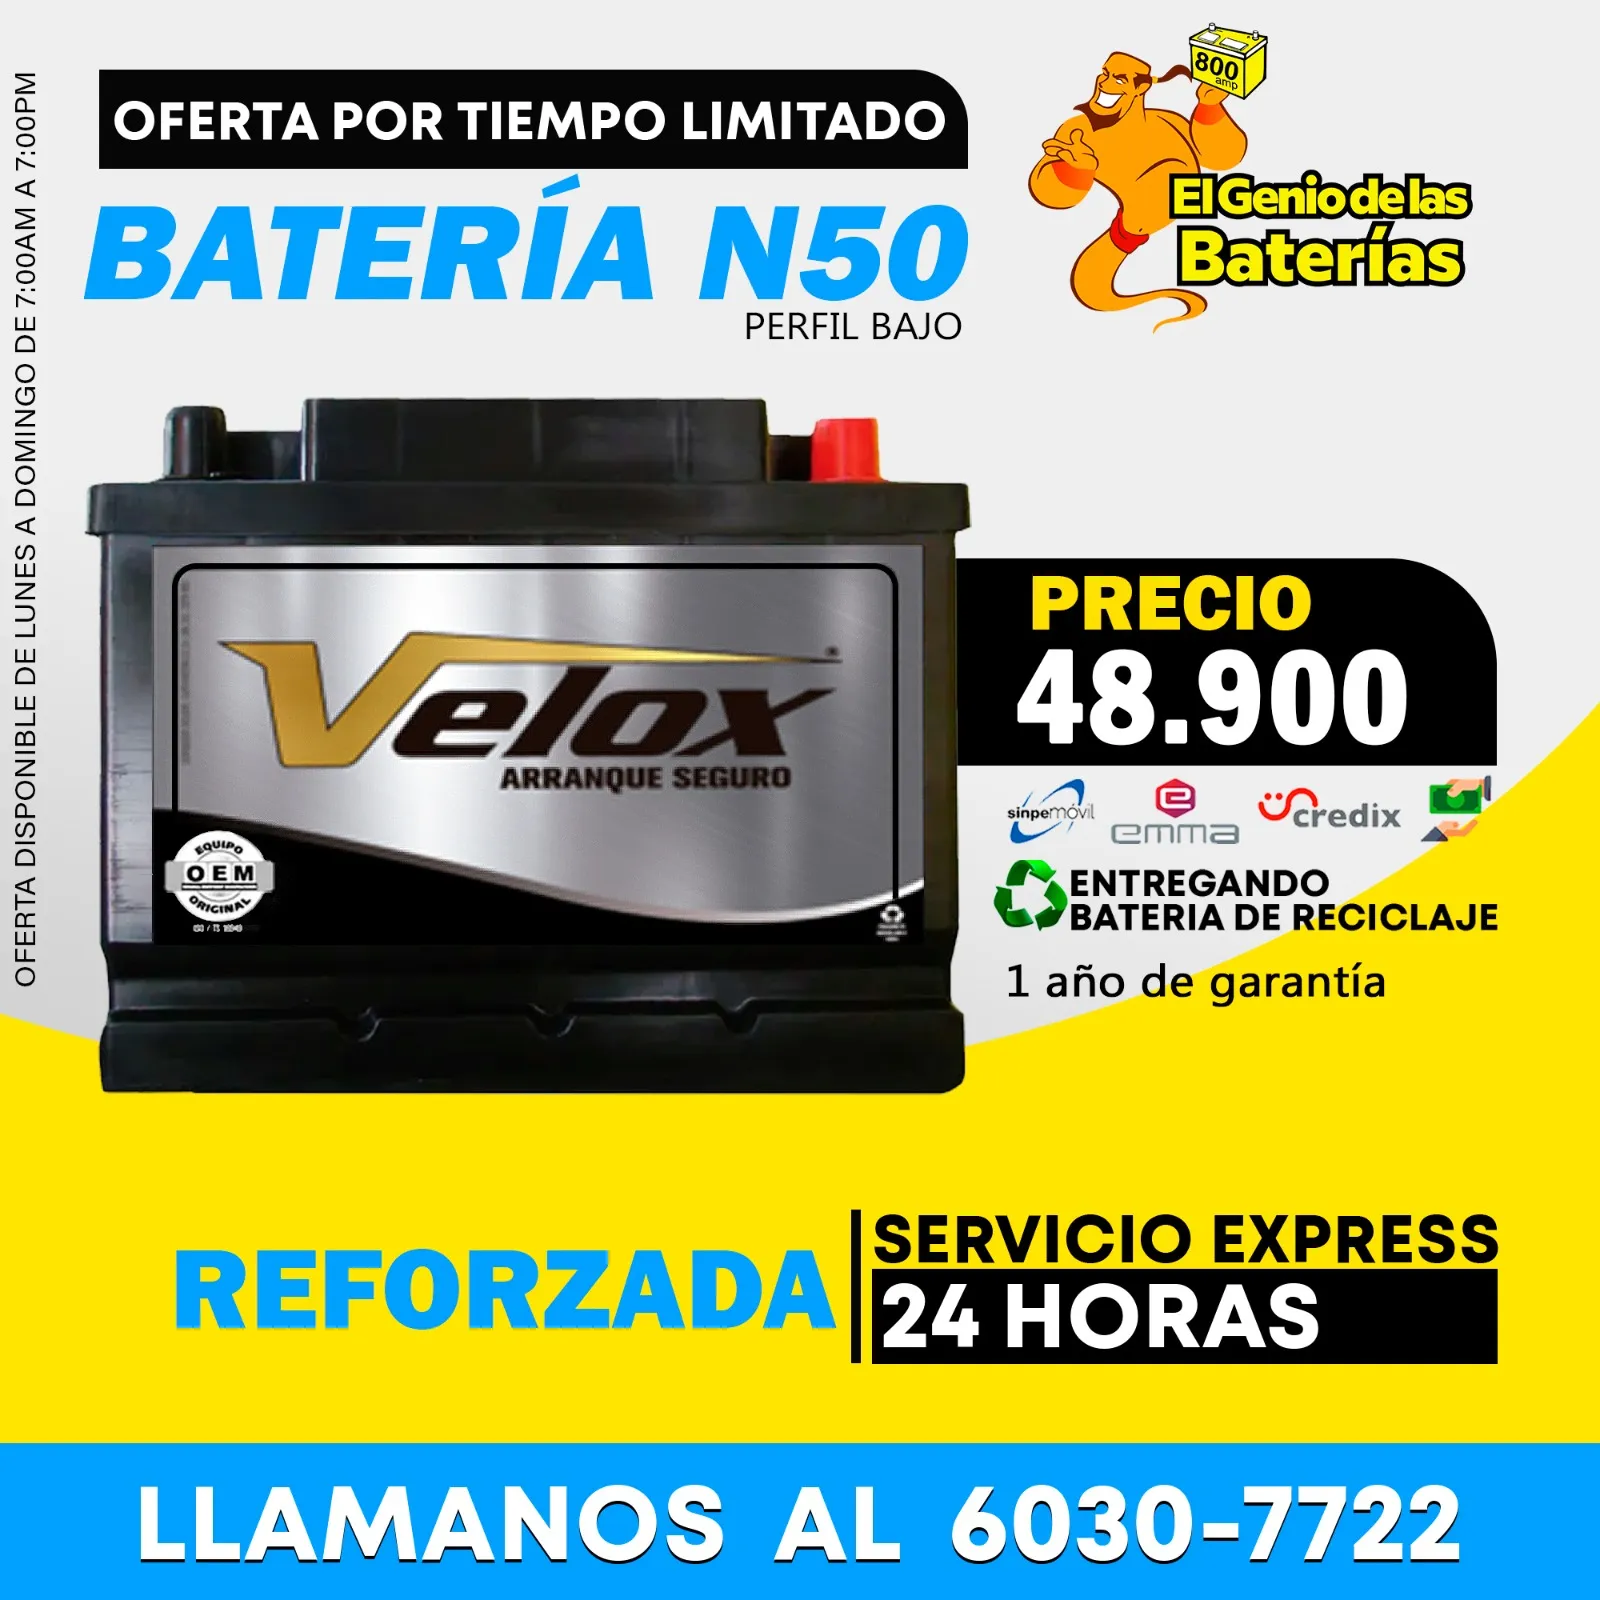 Baterias Velox Grupo N42R / N50 corte bajo